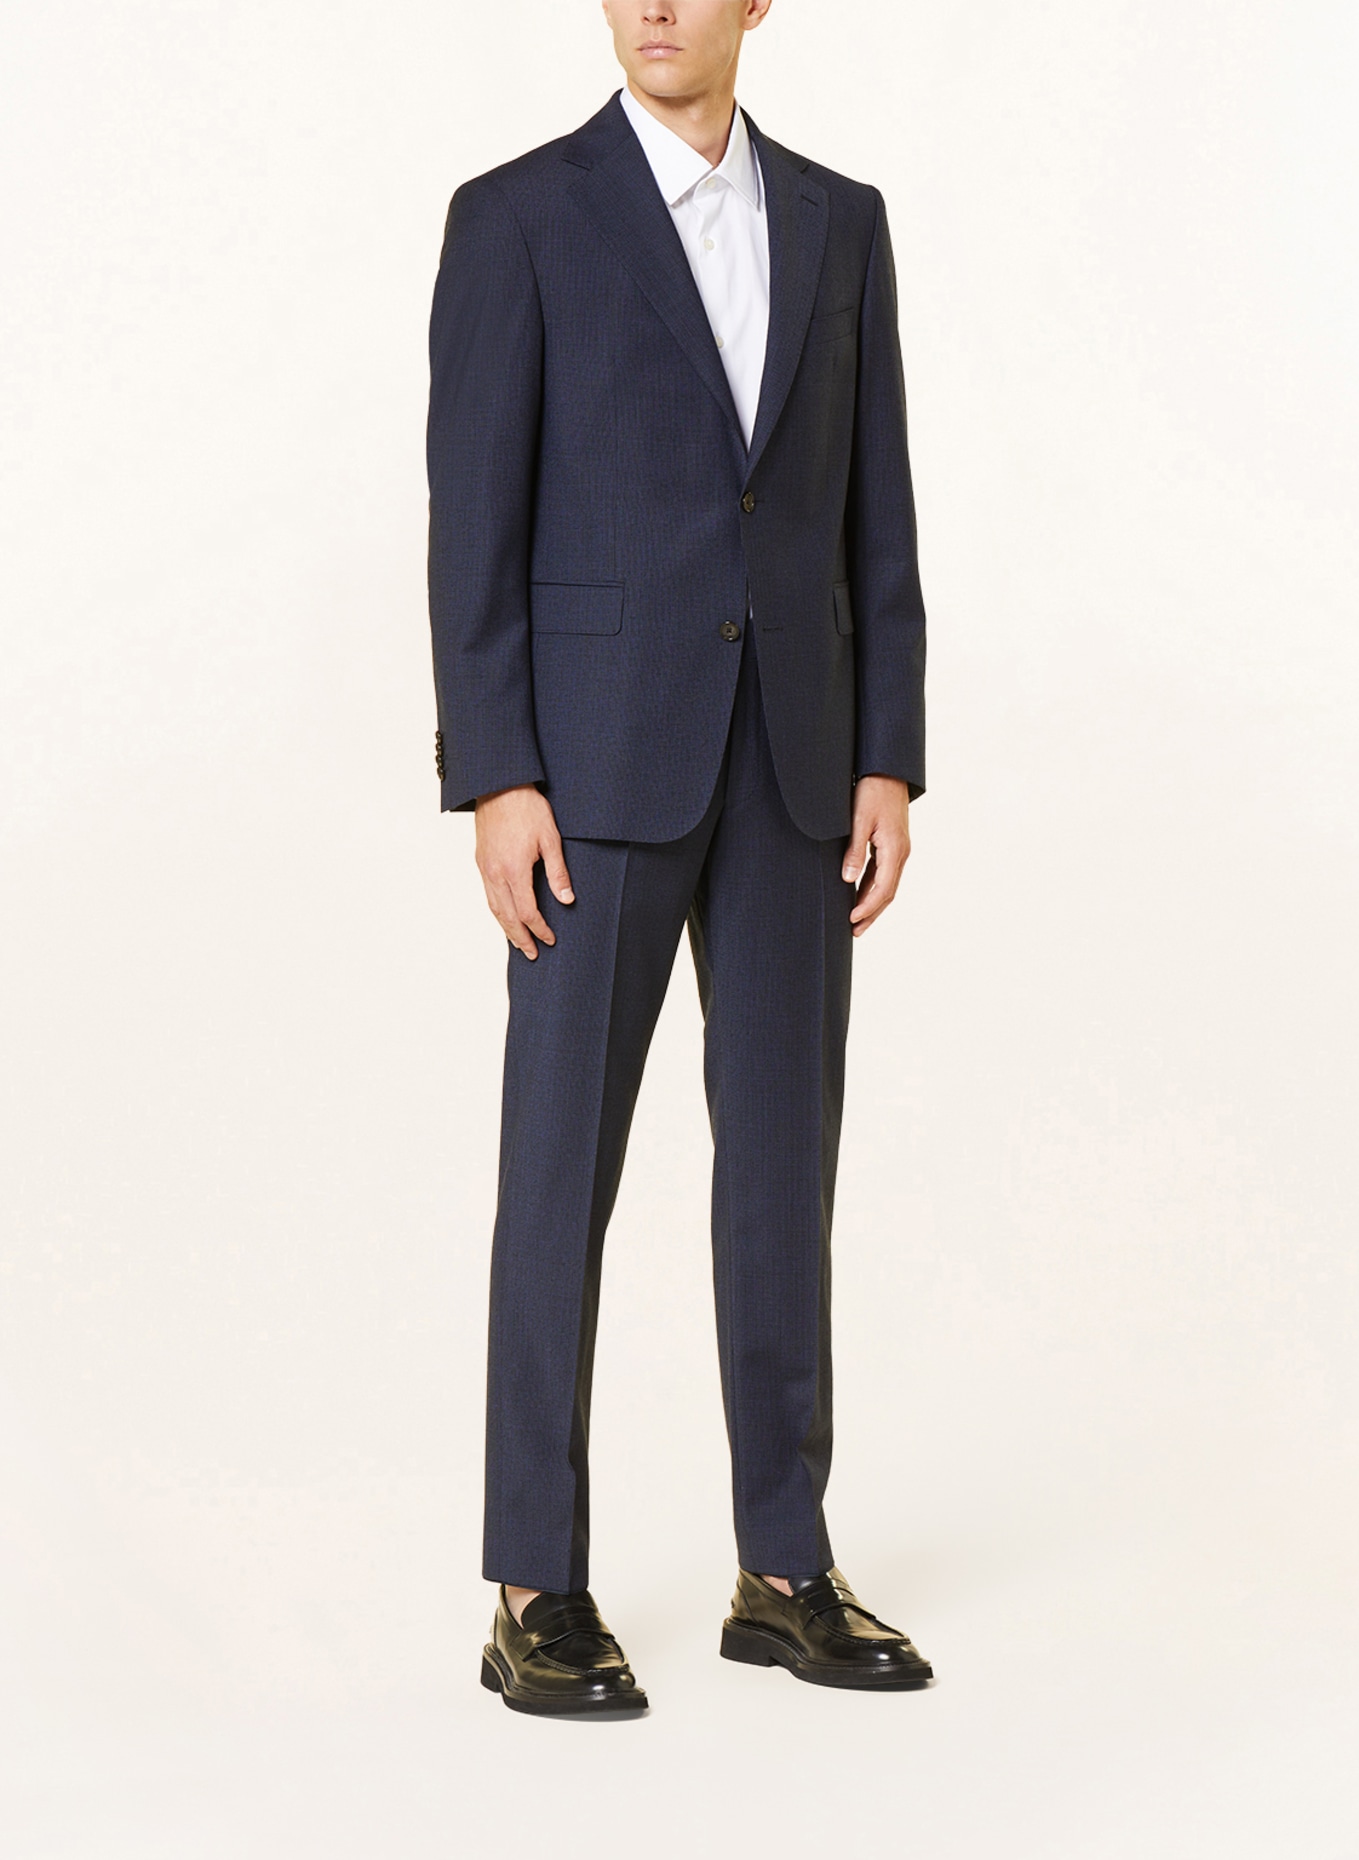 EDUARD DRESSLER Suit jacket comfort fit, Color: 047 DUNKELBLAU (Image 2)